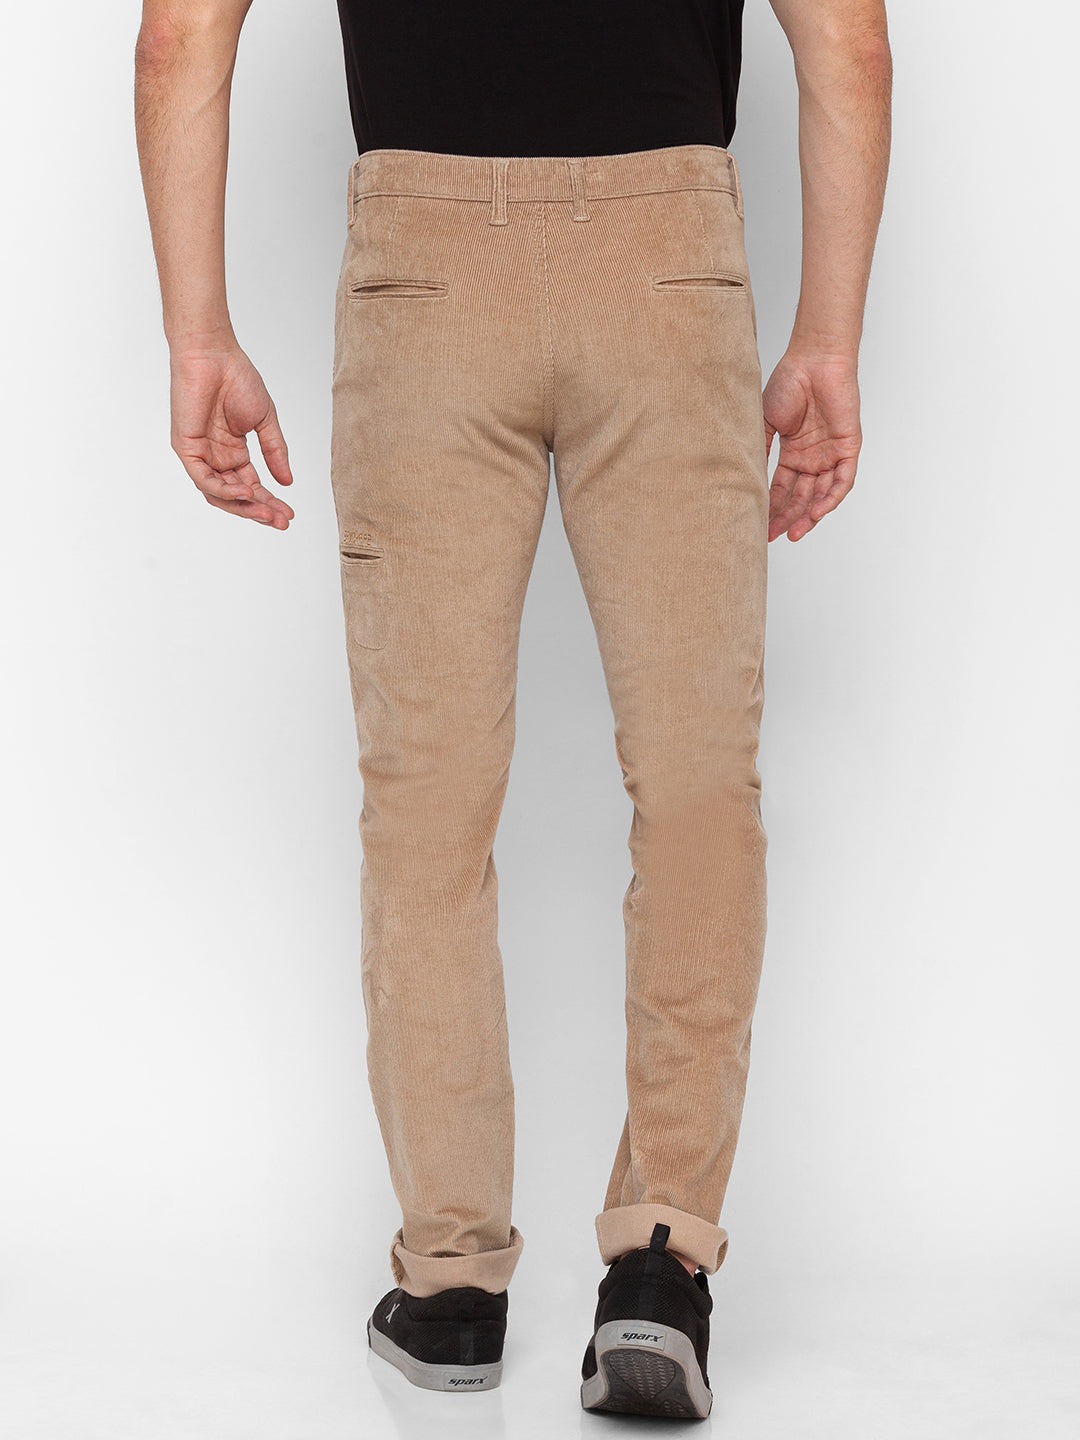 Spykar Beige Cotton Regular Fit Straight Length Trouser For Men